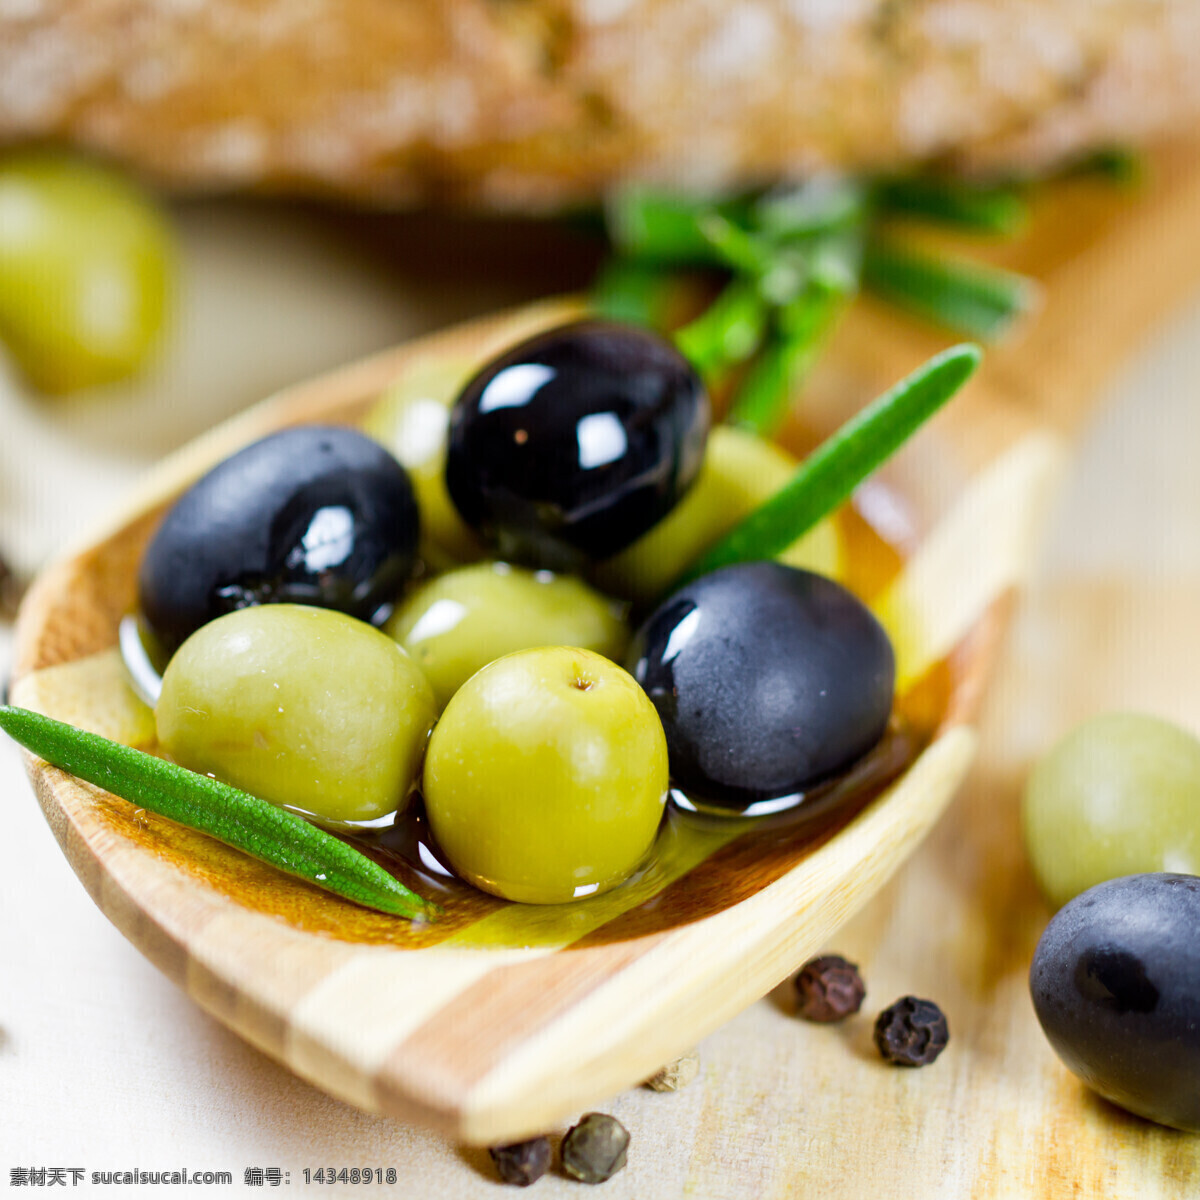 唯美橄榄 美食 美味 营养 养生 唯美 清新 健康食品 意境 食物 食品 橄榄 水果 餐饮美食 食物原料